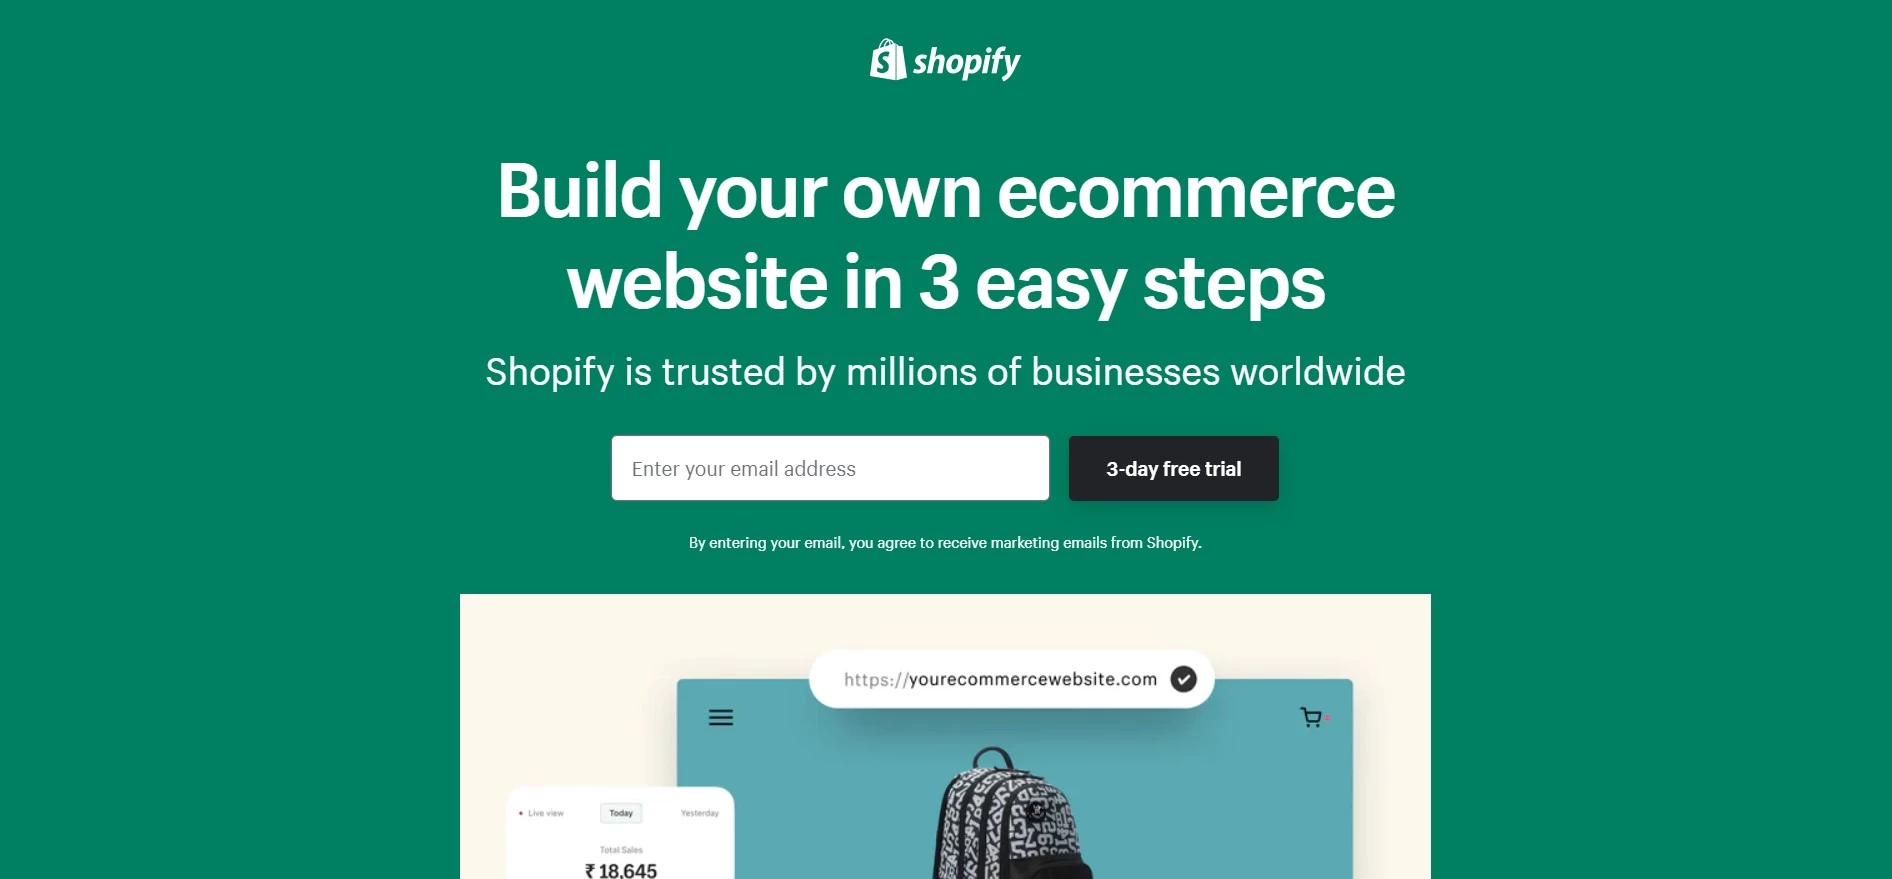 Shopify Website Builder